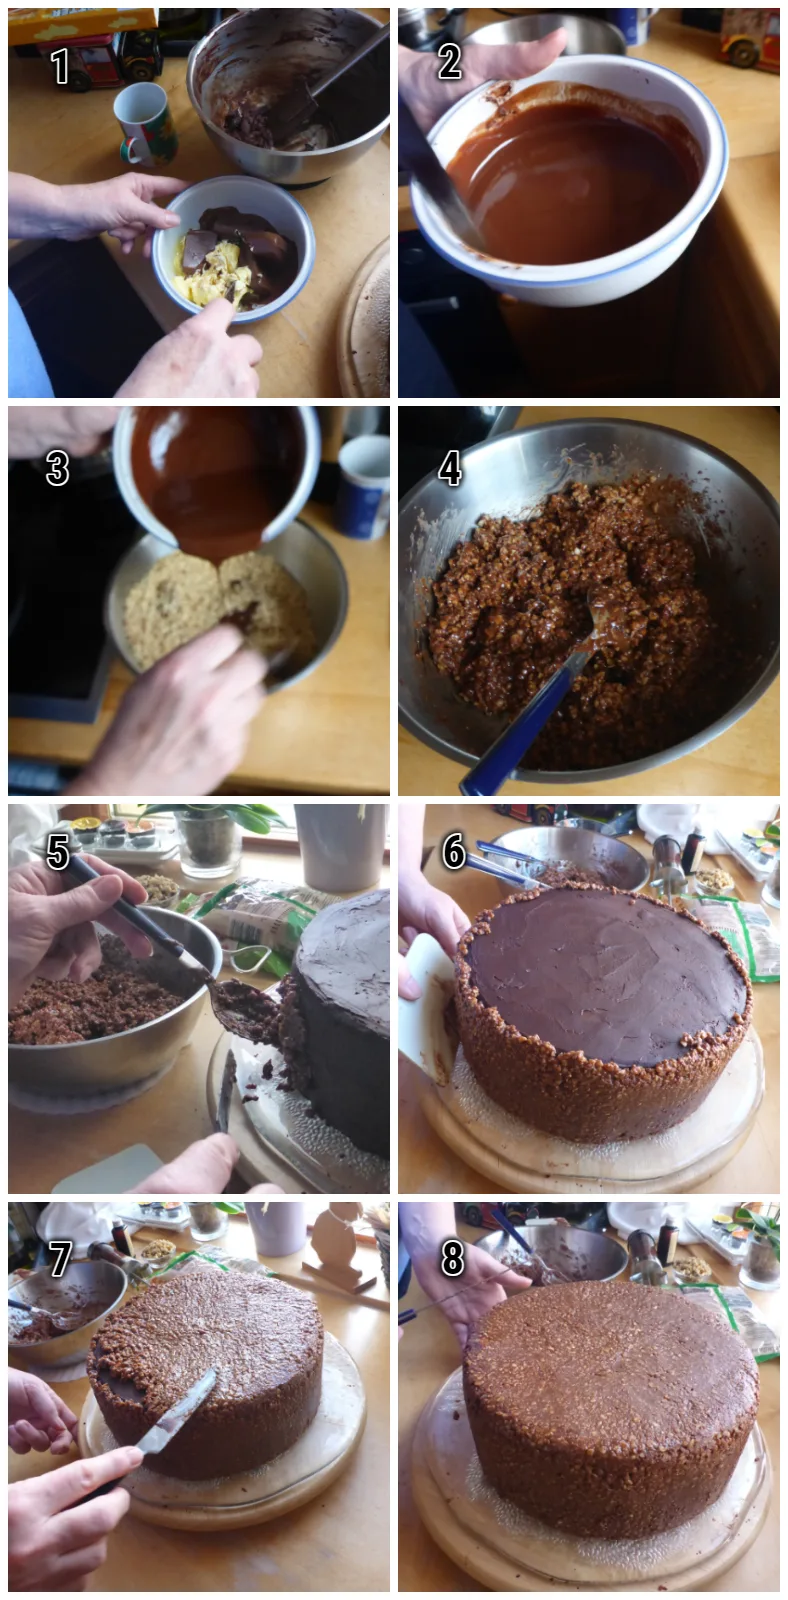 Die Verzierung von Schoko Nuss Torte: Ein faszinierender Prozess entfaltet sich in dieser Reihe von Bildern. Zuerst die Kreation einer verlockenden Schoko-Nusscreme, gefolgt von kunstvoller Verzierung einer Torte, bei der geschmolzene Schokolade in ästhetischen Mustern fließt. 